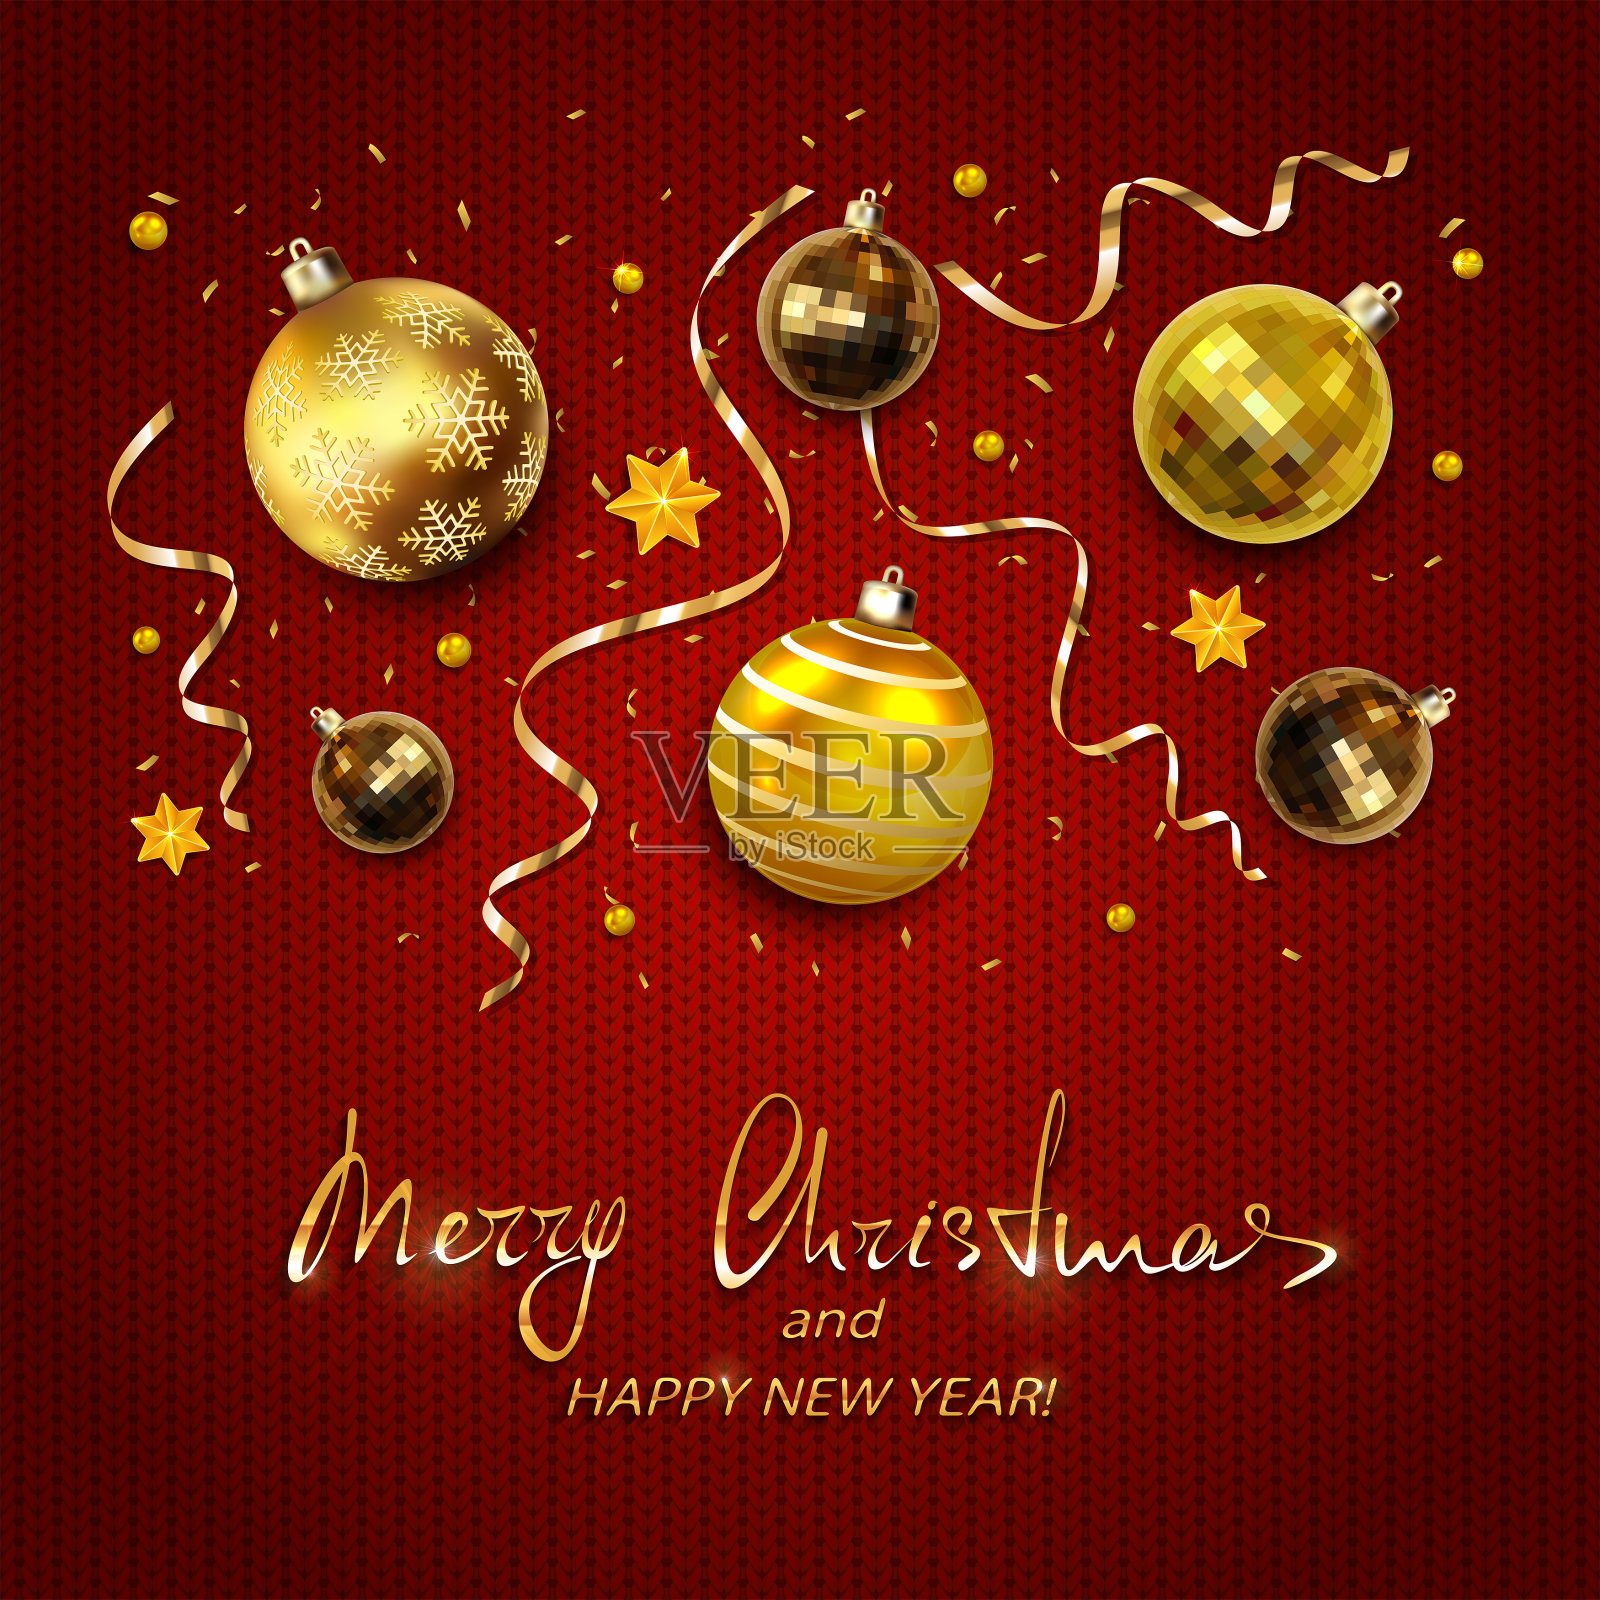 金色的圣诞球与饰带在红色编织的背景设计模板素材